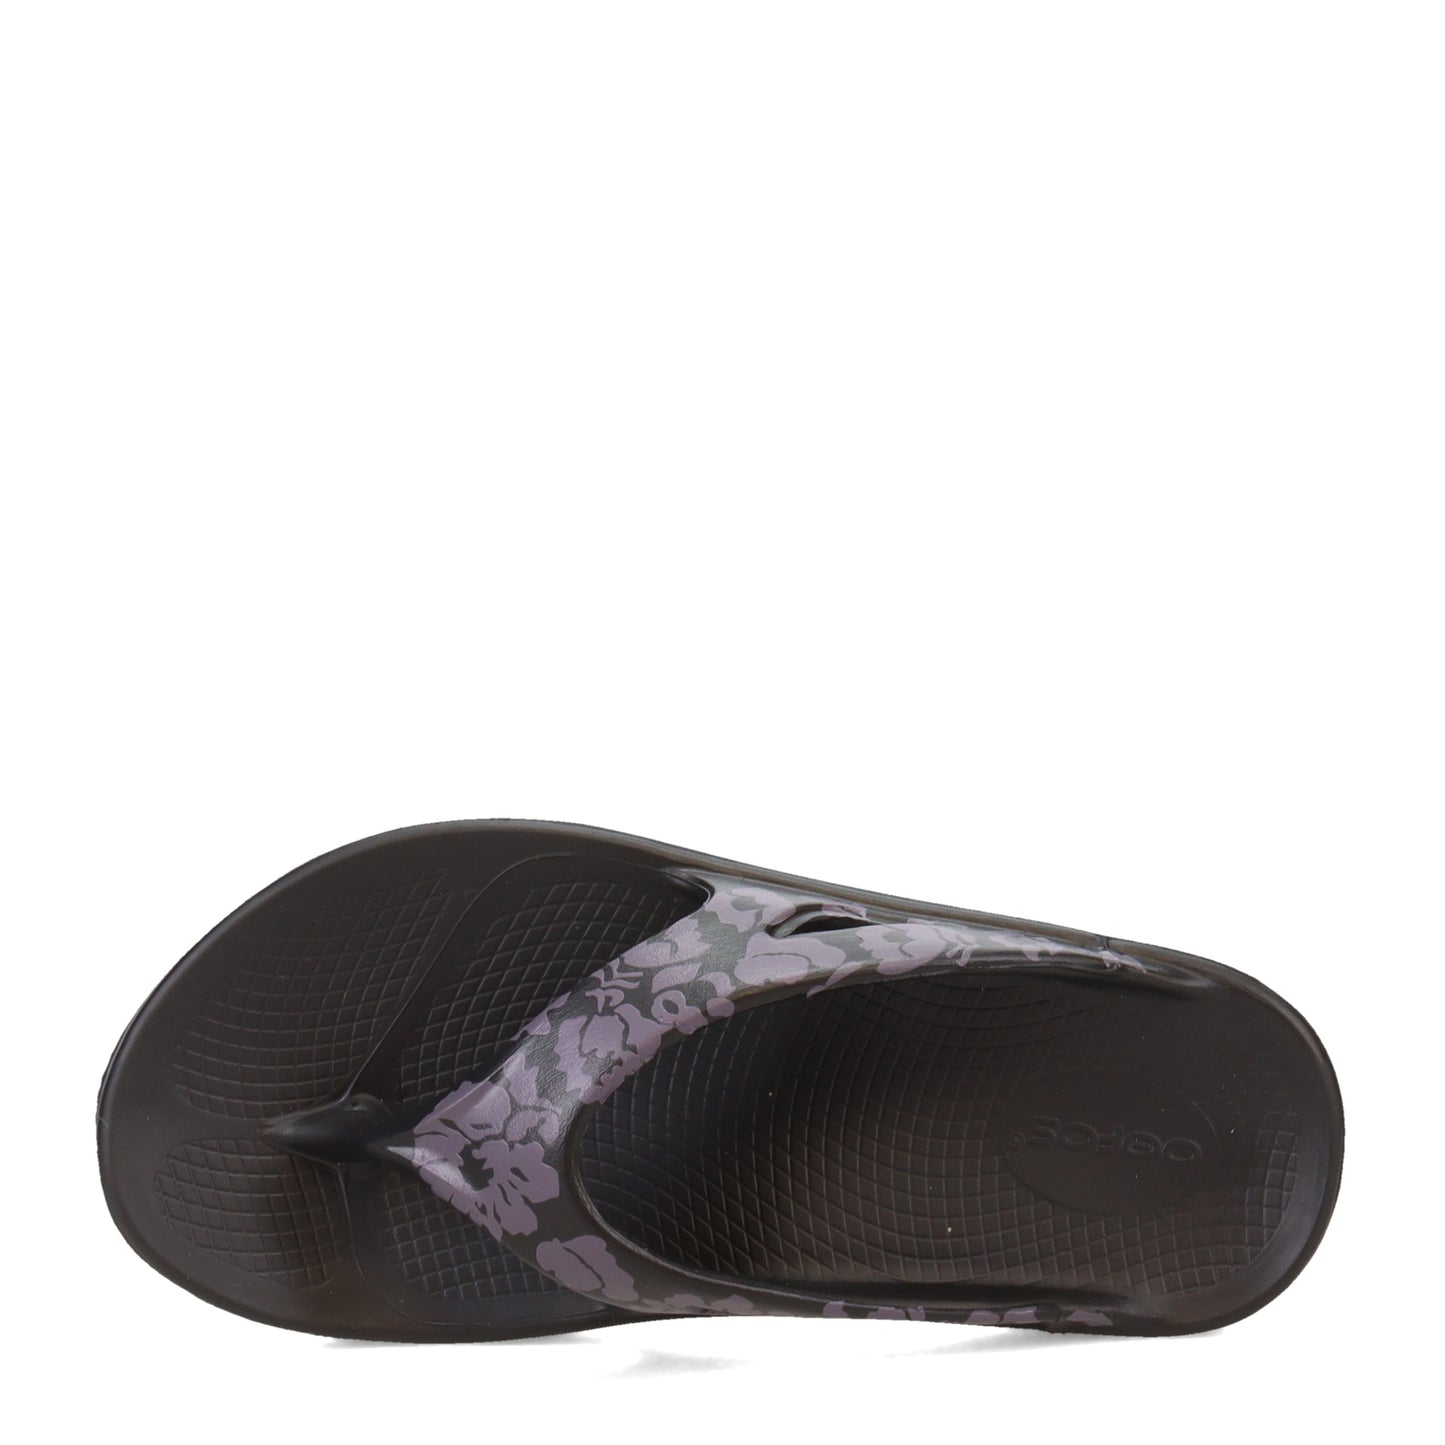 Peltz Shoes  Women's Oofos OOriginal Sandal MIDNIGHT 1003-MIDNIGHT